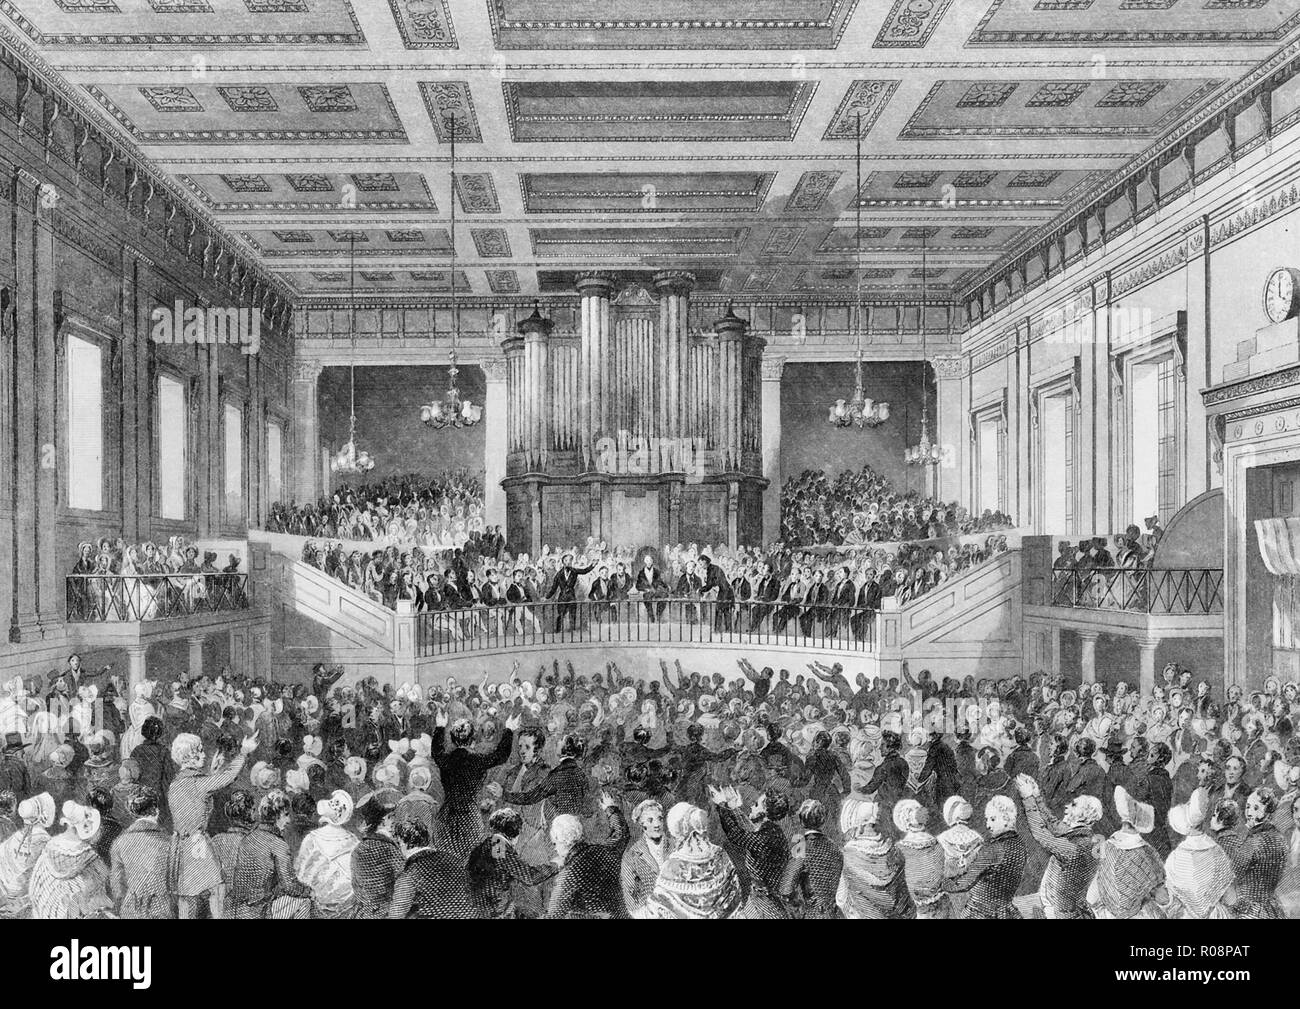 Exeter Hall, la gran reunión de anti-esclavitud, 1841 - interior de Exeter Hall lleno con una multitud de personas para la reunión de la Sociedad Anti-esclavitud, Londres, Inglaterra. Foto de stock